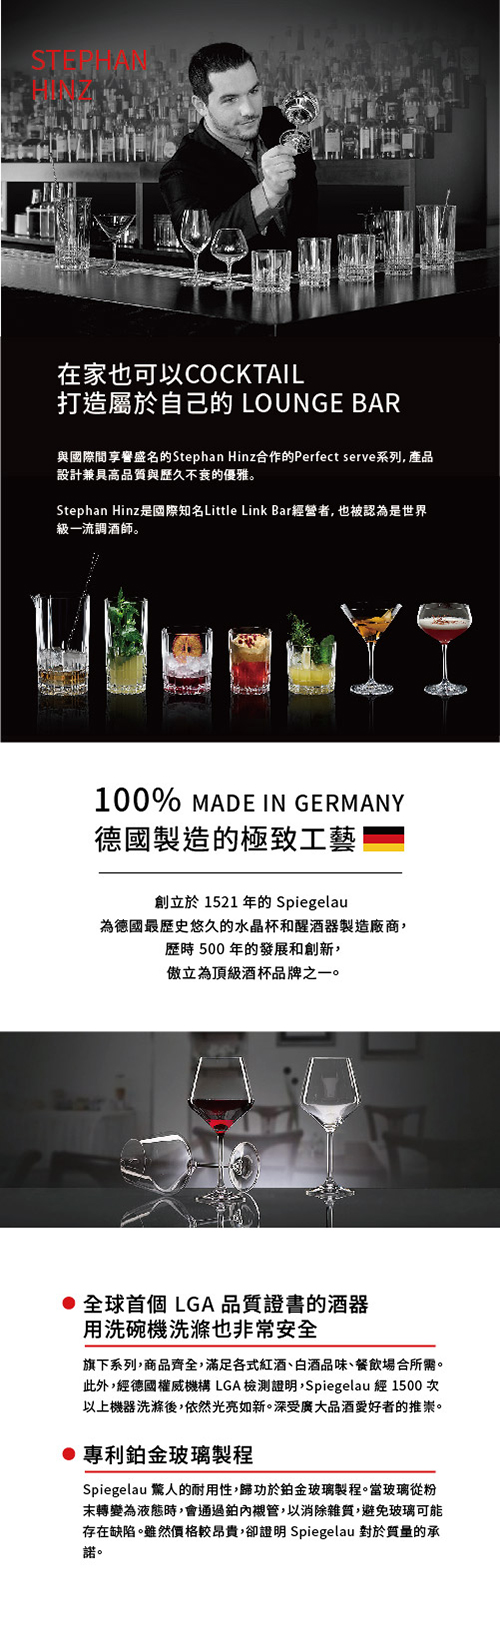 德國Spiegelau Perfect Serve 完美系列 馬丁尼杯4件酒杯組